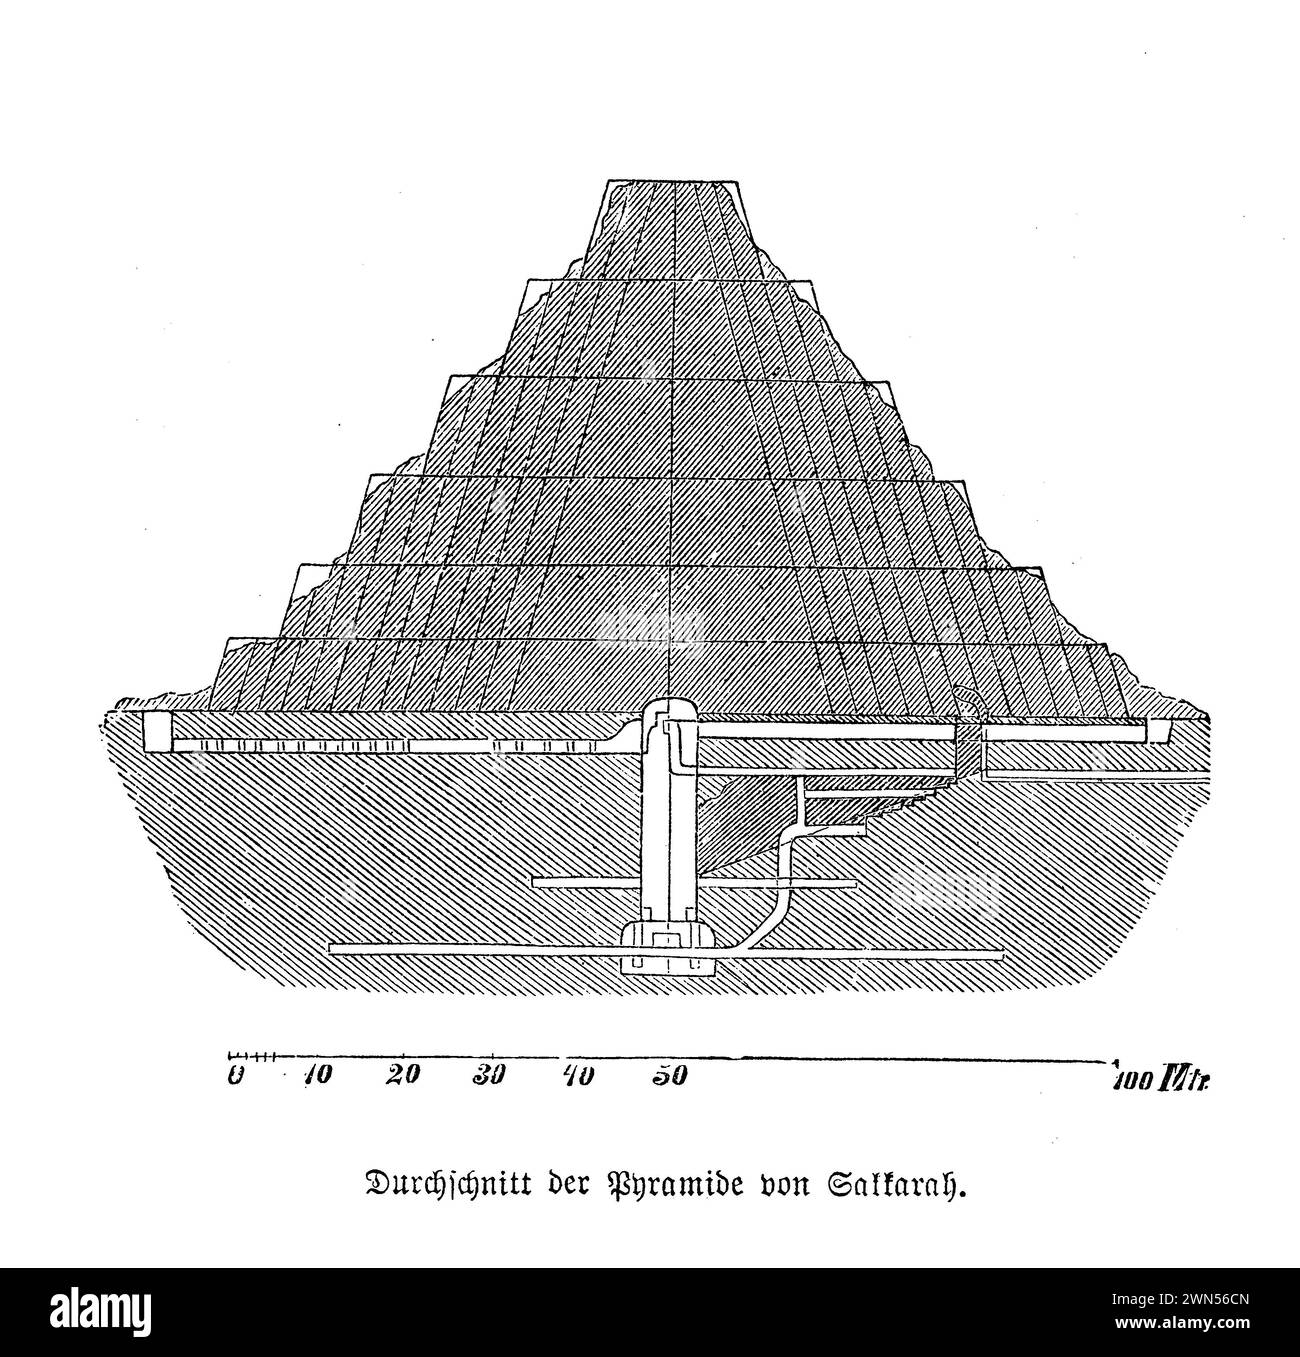 La pyramide de Djéser, située dans la nécropole de Saqqara en Égypte, est l'un des plus anciens bâtiments en pierre colossale de l'histoire égyptienne et est considérée comme la première construction en pierre taillée à grande échelle. Il a été construit au 27ème siècle av. J.-C. pour l'enterrement du Pharaon Djéser par son architecte Imhotep. Cette structure est un excellent exemple de l'architecture monumentale primitive, représentant un écart significatif par rapport aux tombeaux mastaba traditionnels de l'époque et ouvrant la voie au développement ultérieur des pyramides de Gizeh Banque D'Images